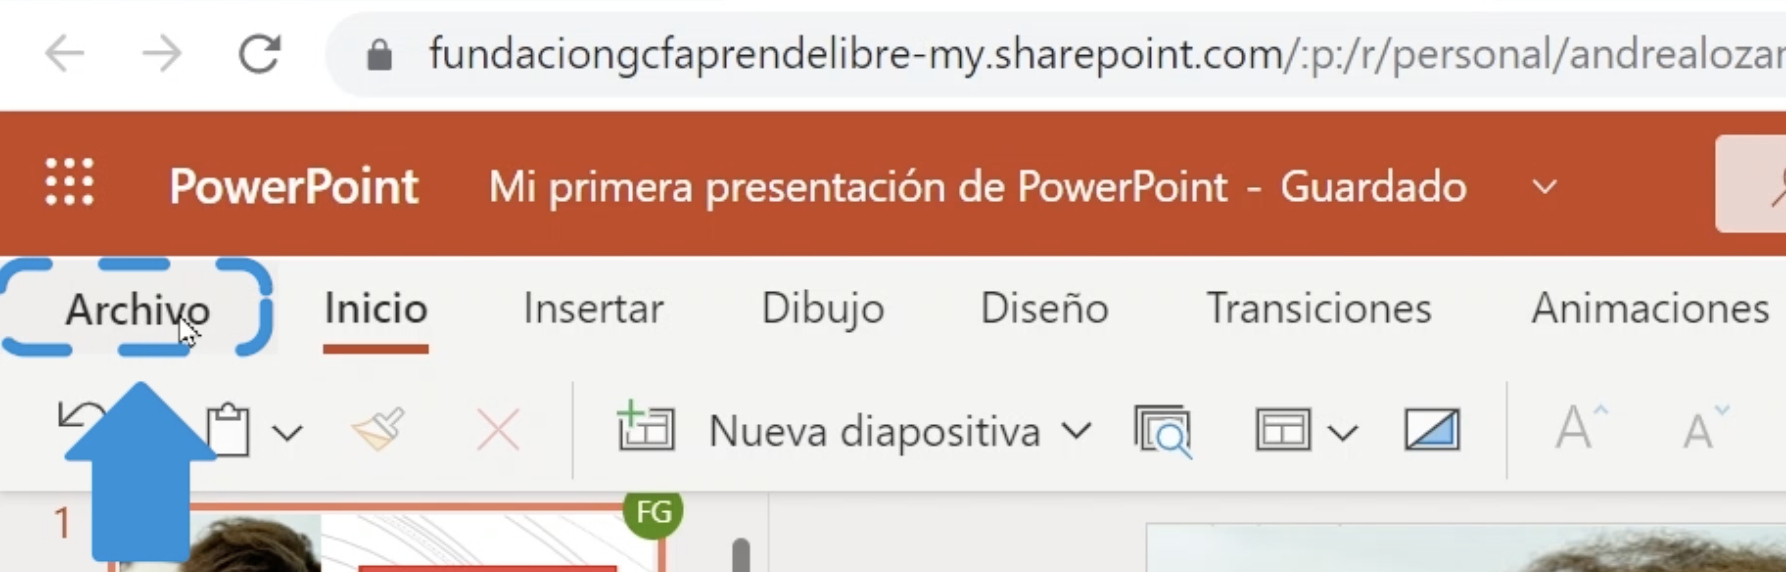 Cómo compartir archivos en PowerPoint 365